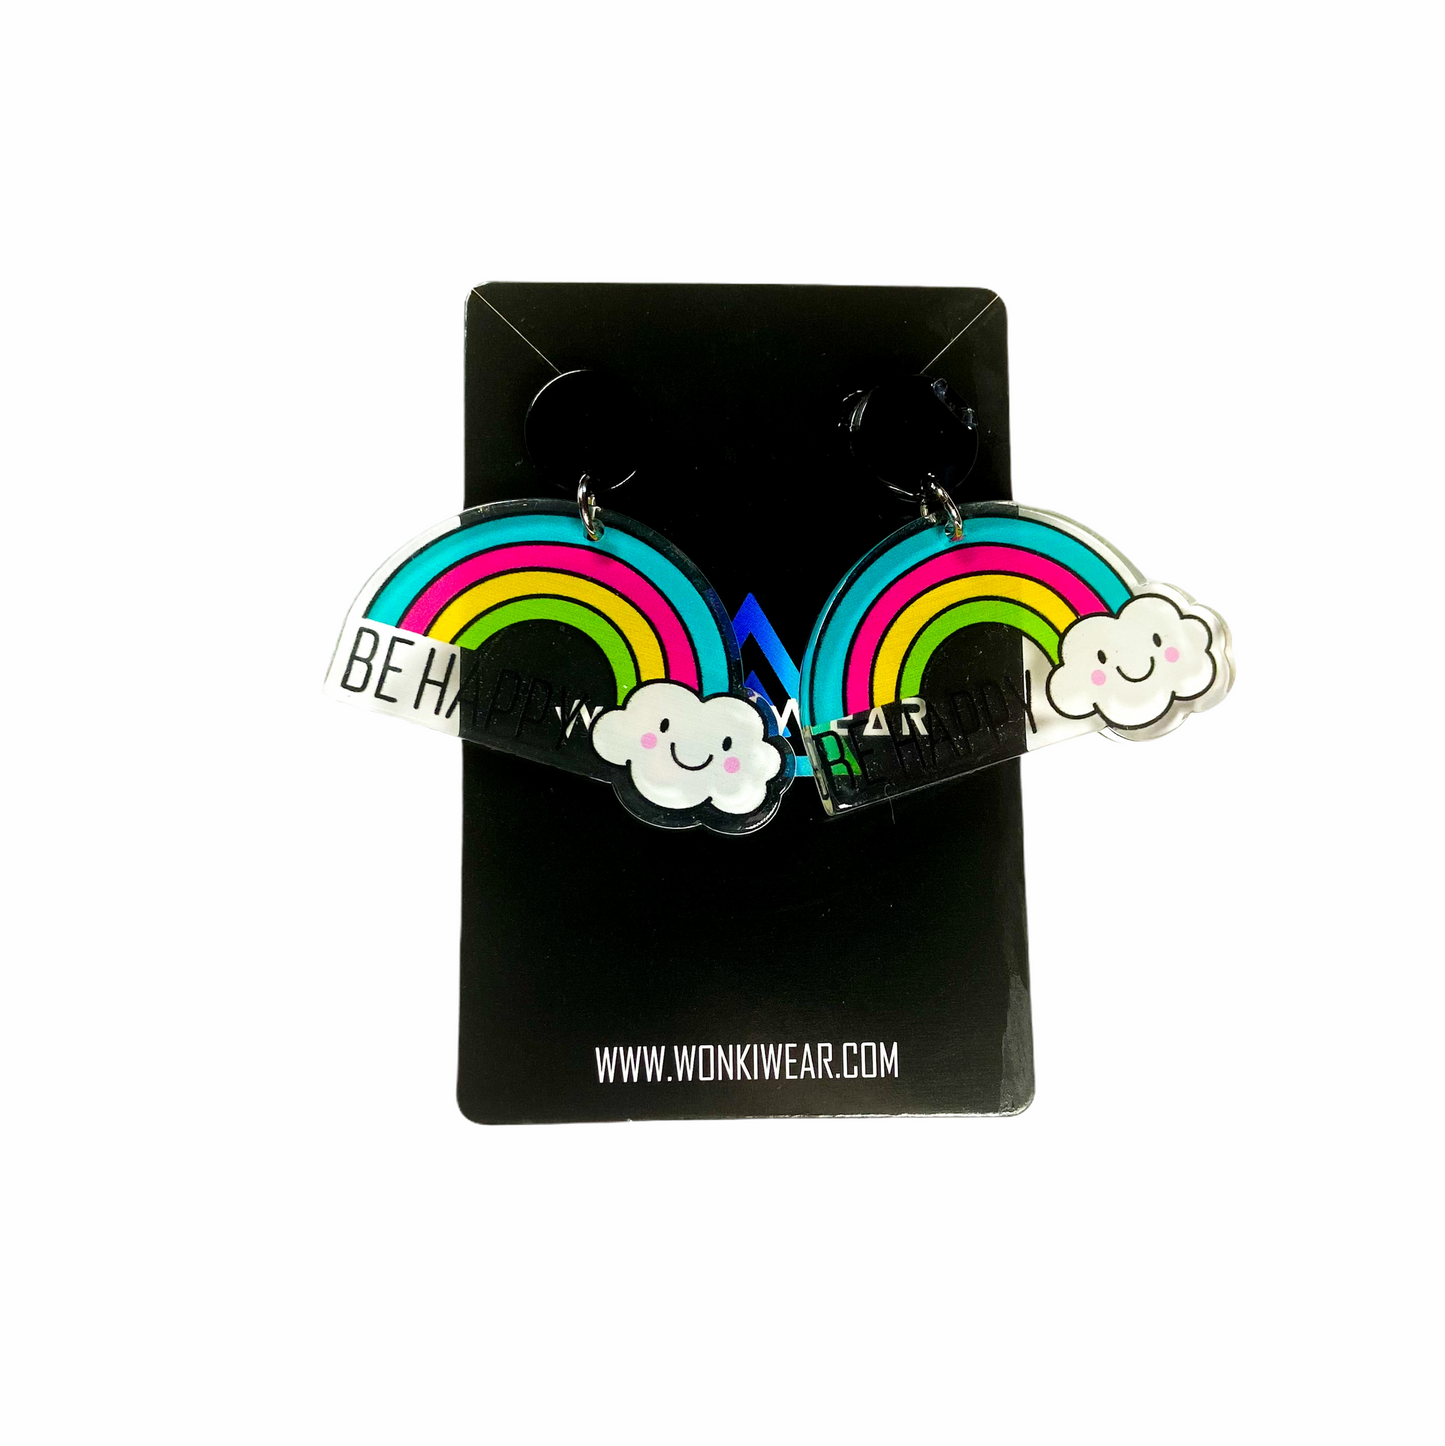 Earrings - Oversized happy rainbow drops